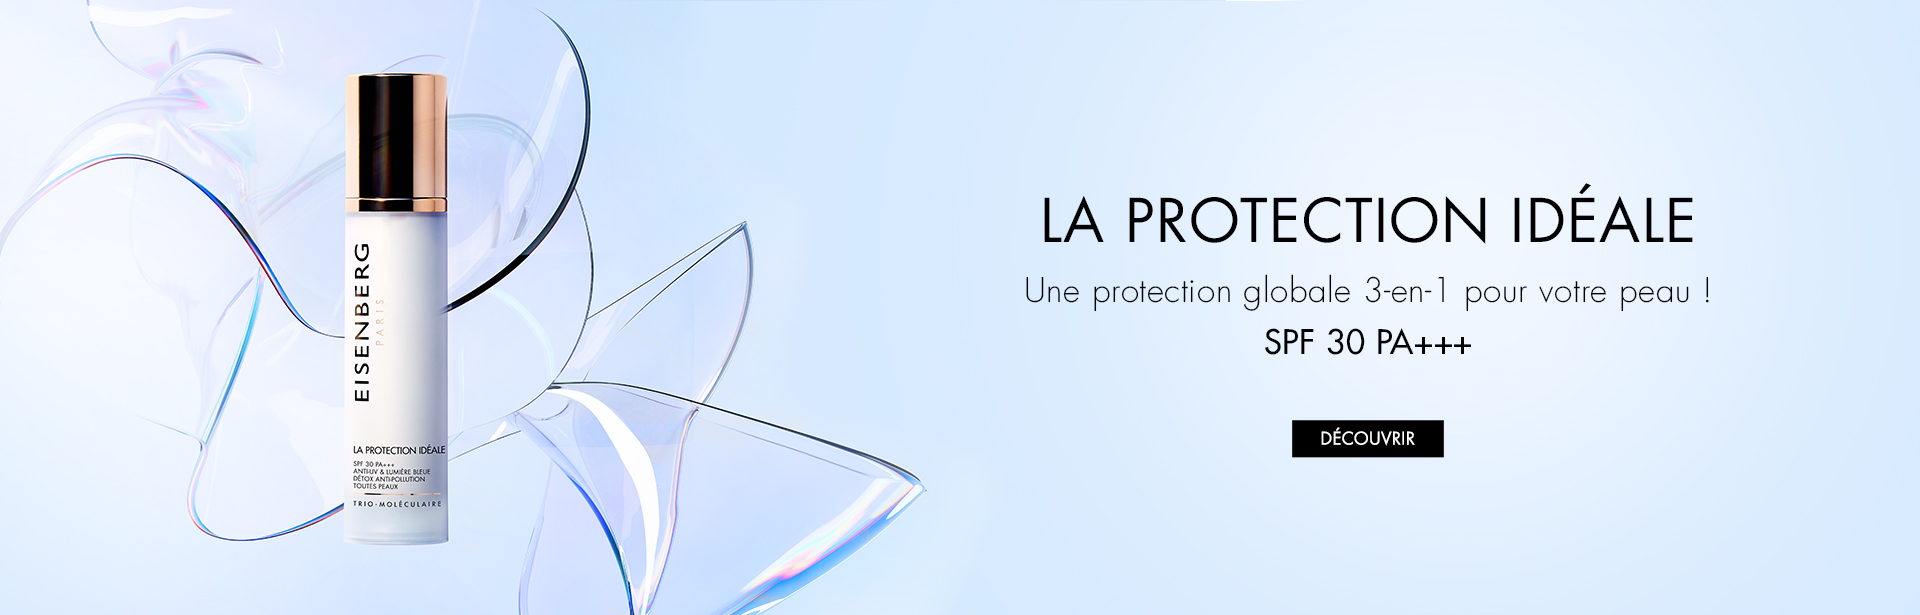 DIAPO_LA_PROTECTION_IDEALE - FR